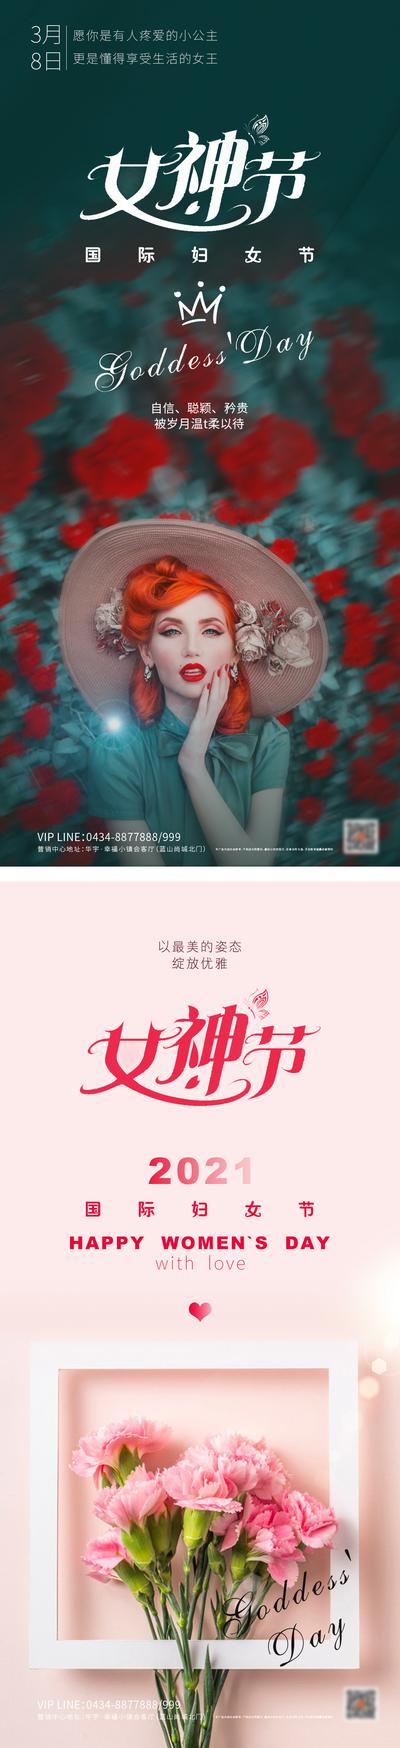 南门网 广告 海报 妇女节 38 节日 鲜花 系列 女神节